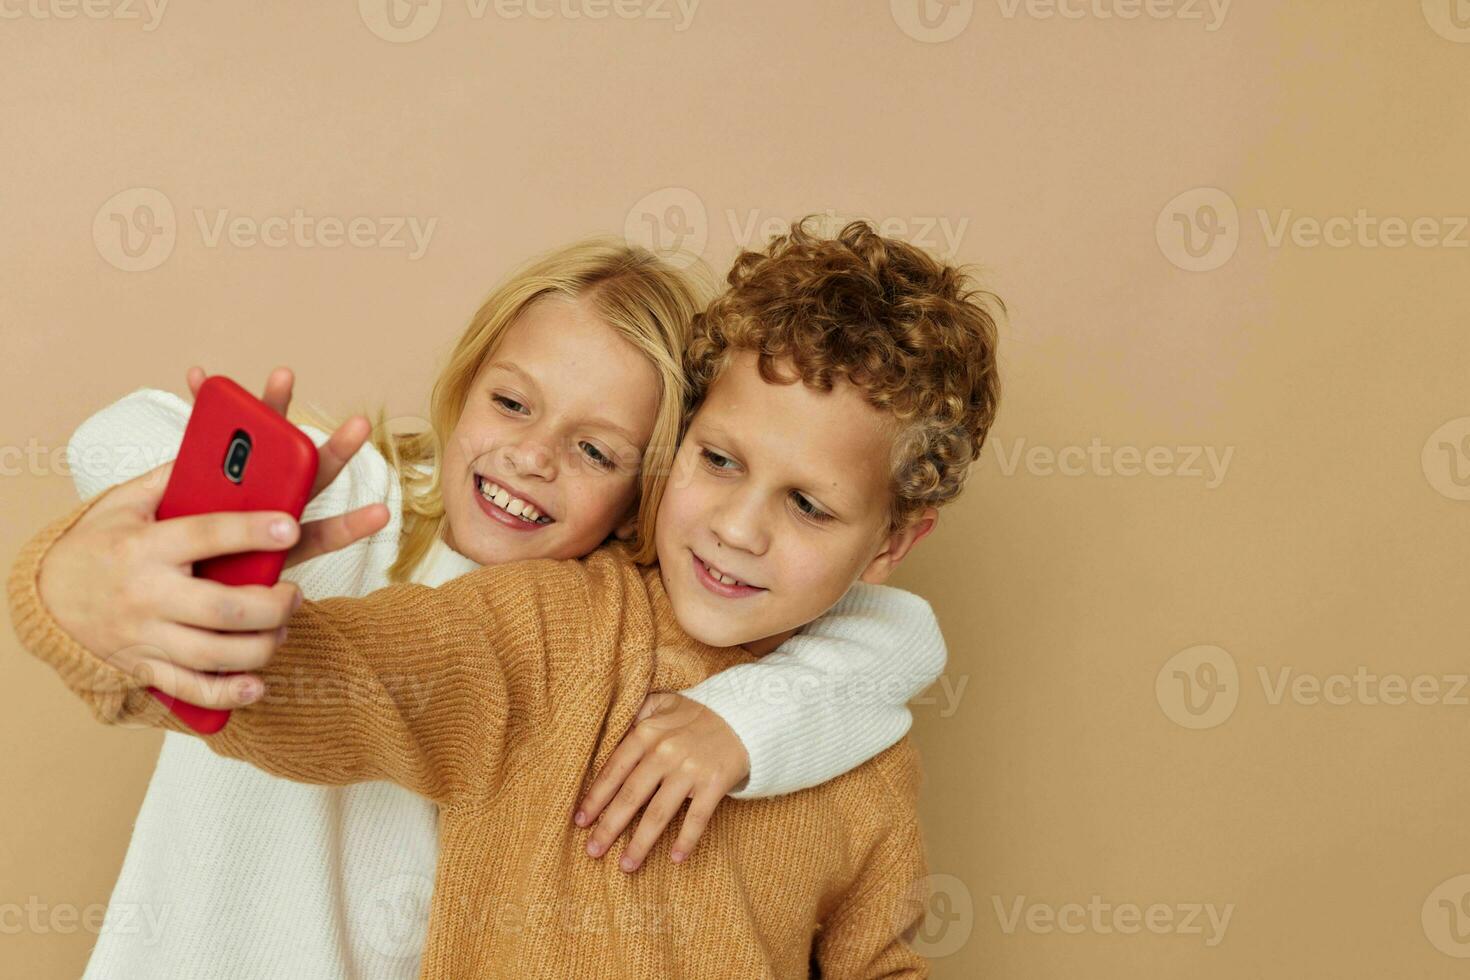 pequeño chico y niña abrazo entretenimiento selfie posando amistad infancia inalterado foto